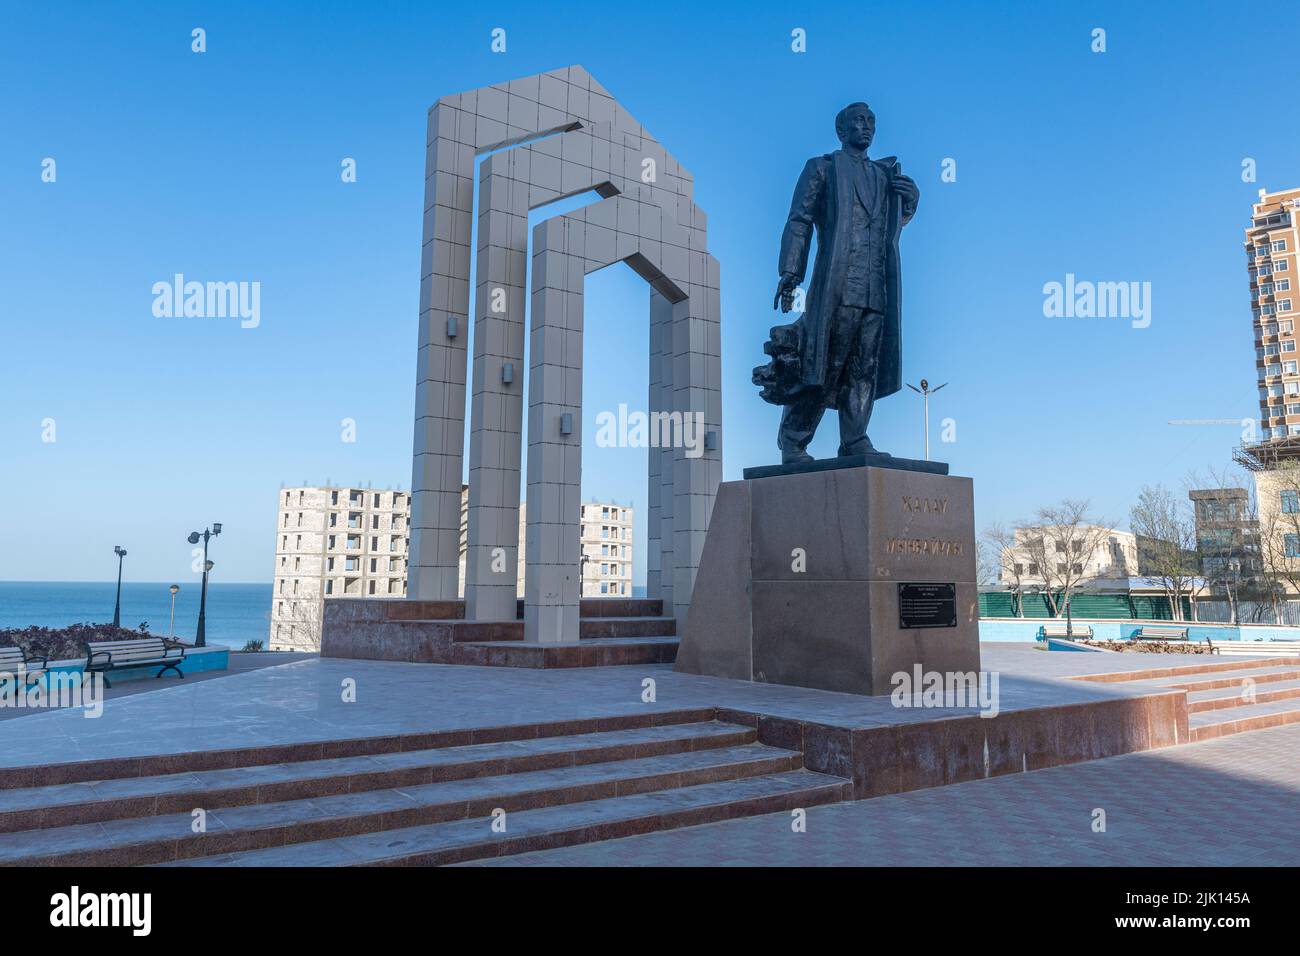 Denkmal für Zhalau Mynbayev, Aktau, Kaspisches Meer, Kasachstan, Zentralasien, Asien Stockfoto